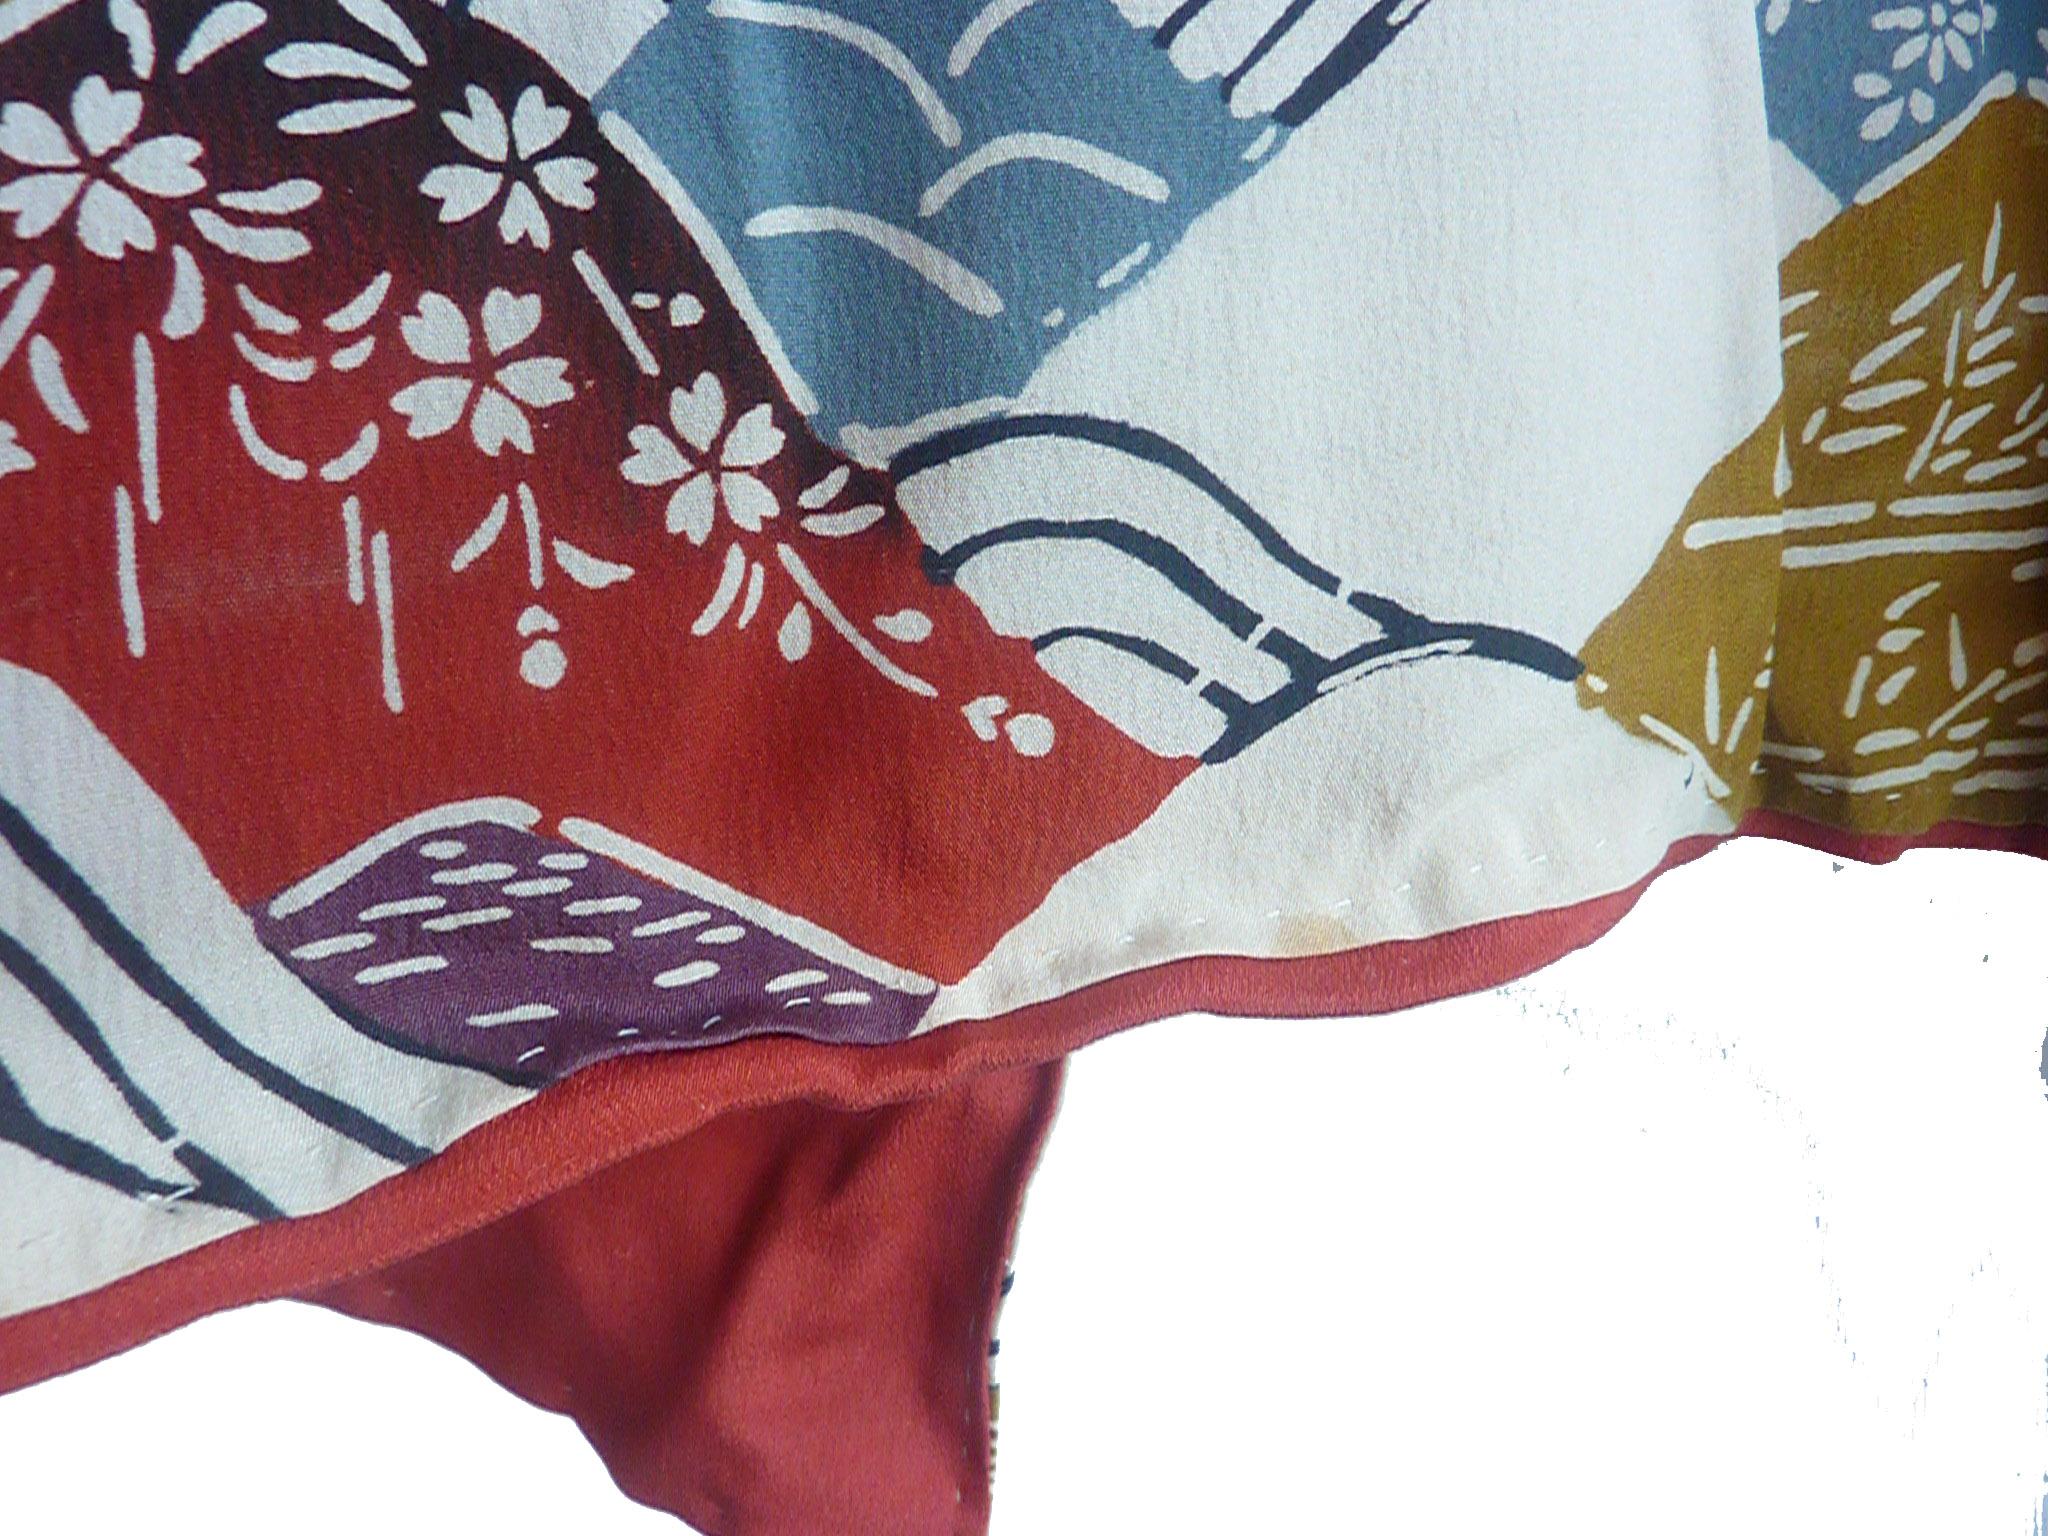 Circa : 1890  MEIJI
Lieu d'origine : Japon
Matériau : Soie
Condition : Très bon - voir quelques taches de vieillesse illustrées du mieux que nous pouvons.
Le kimono tout en soie imprimé sur fond pâle est peint, cousu à la main et fabriqué à la main